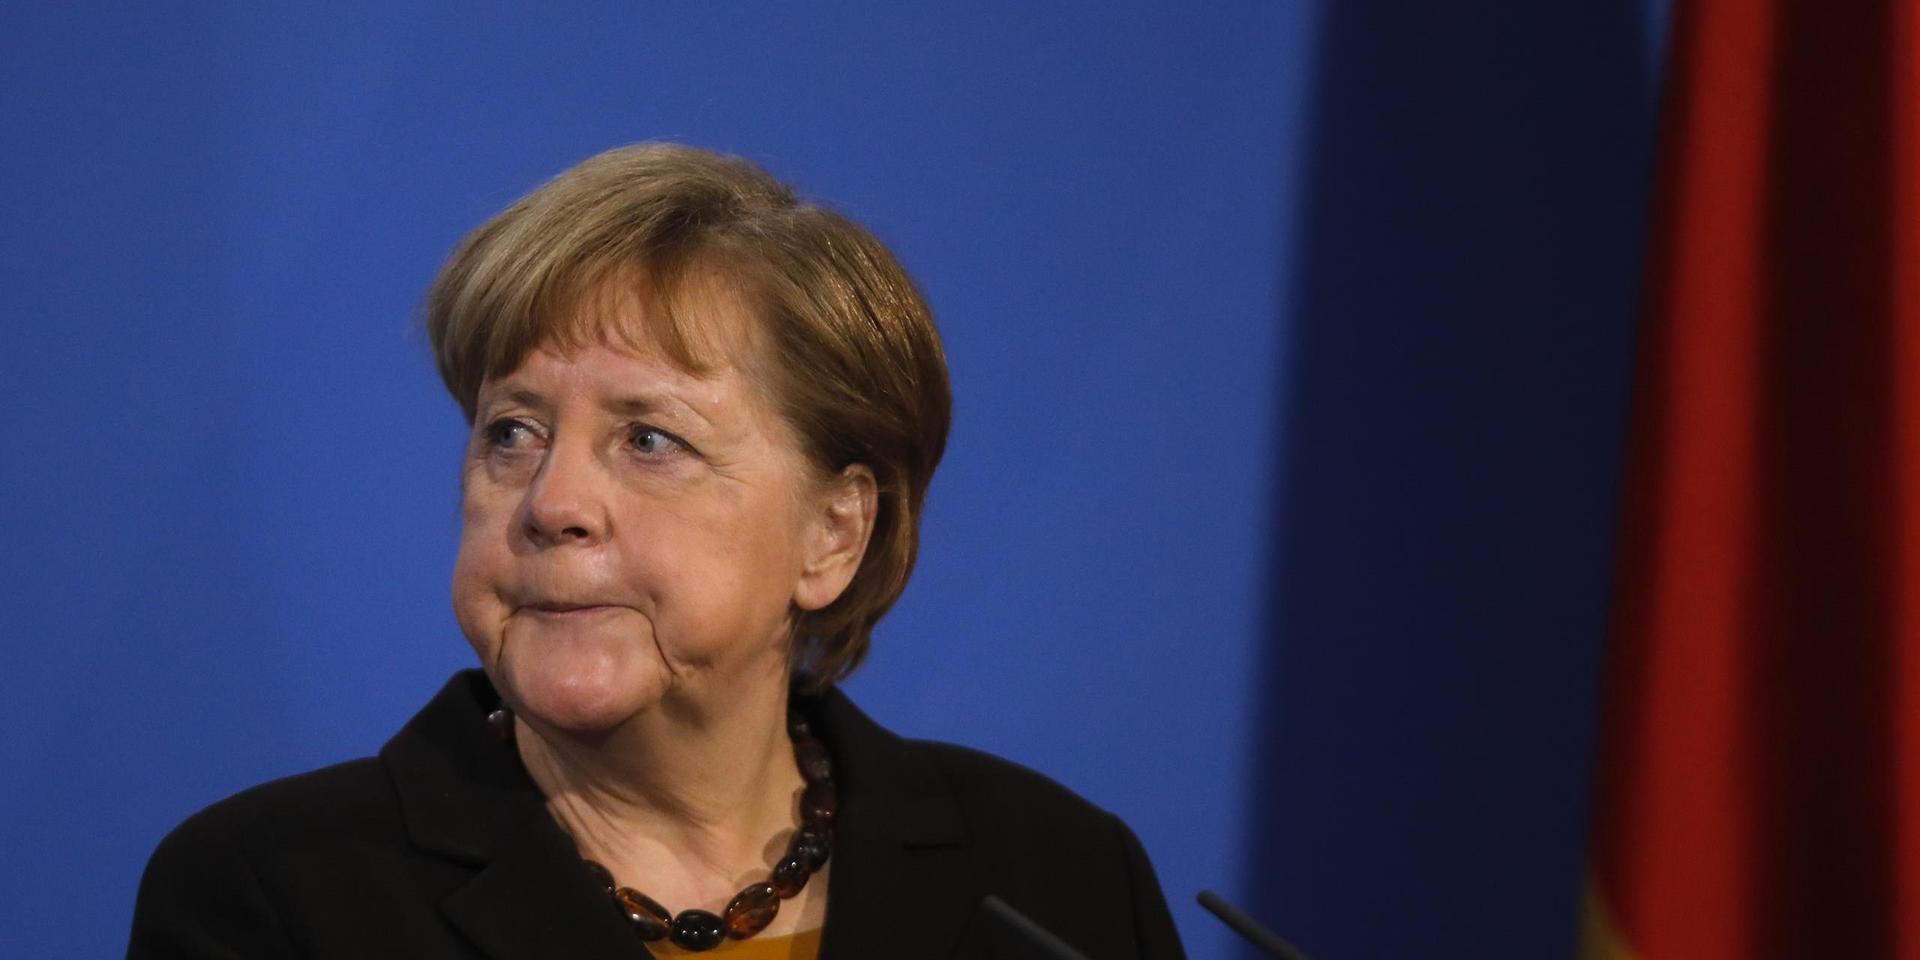 Tysklands förbundskansler Angela Merkel ska samtala med Rysslands president Vladimir Putin om köp av det ryska vaccinet Sputnik V. Arkivbild.